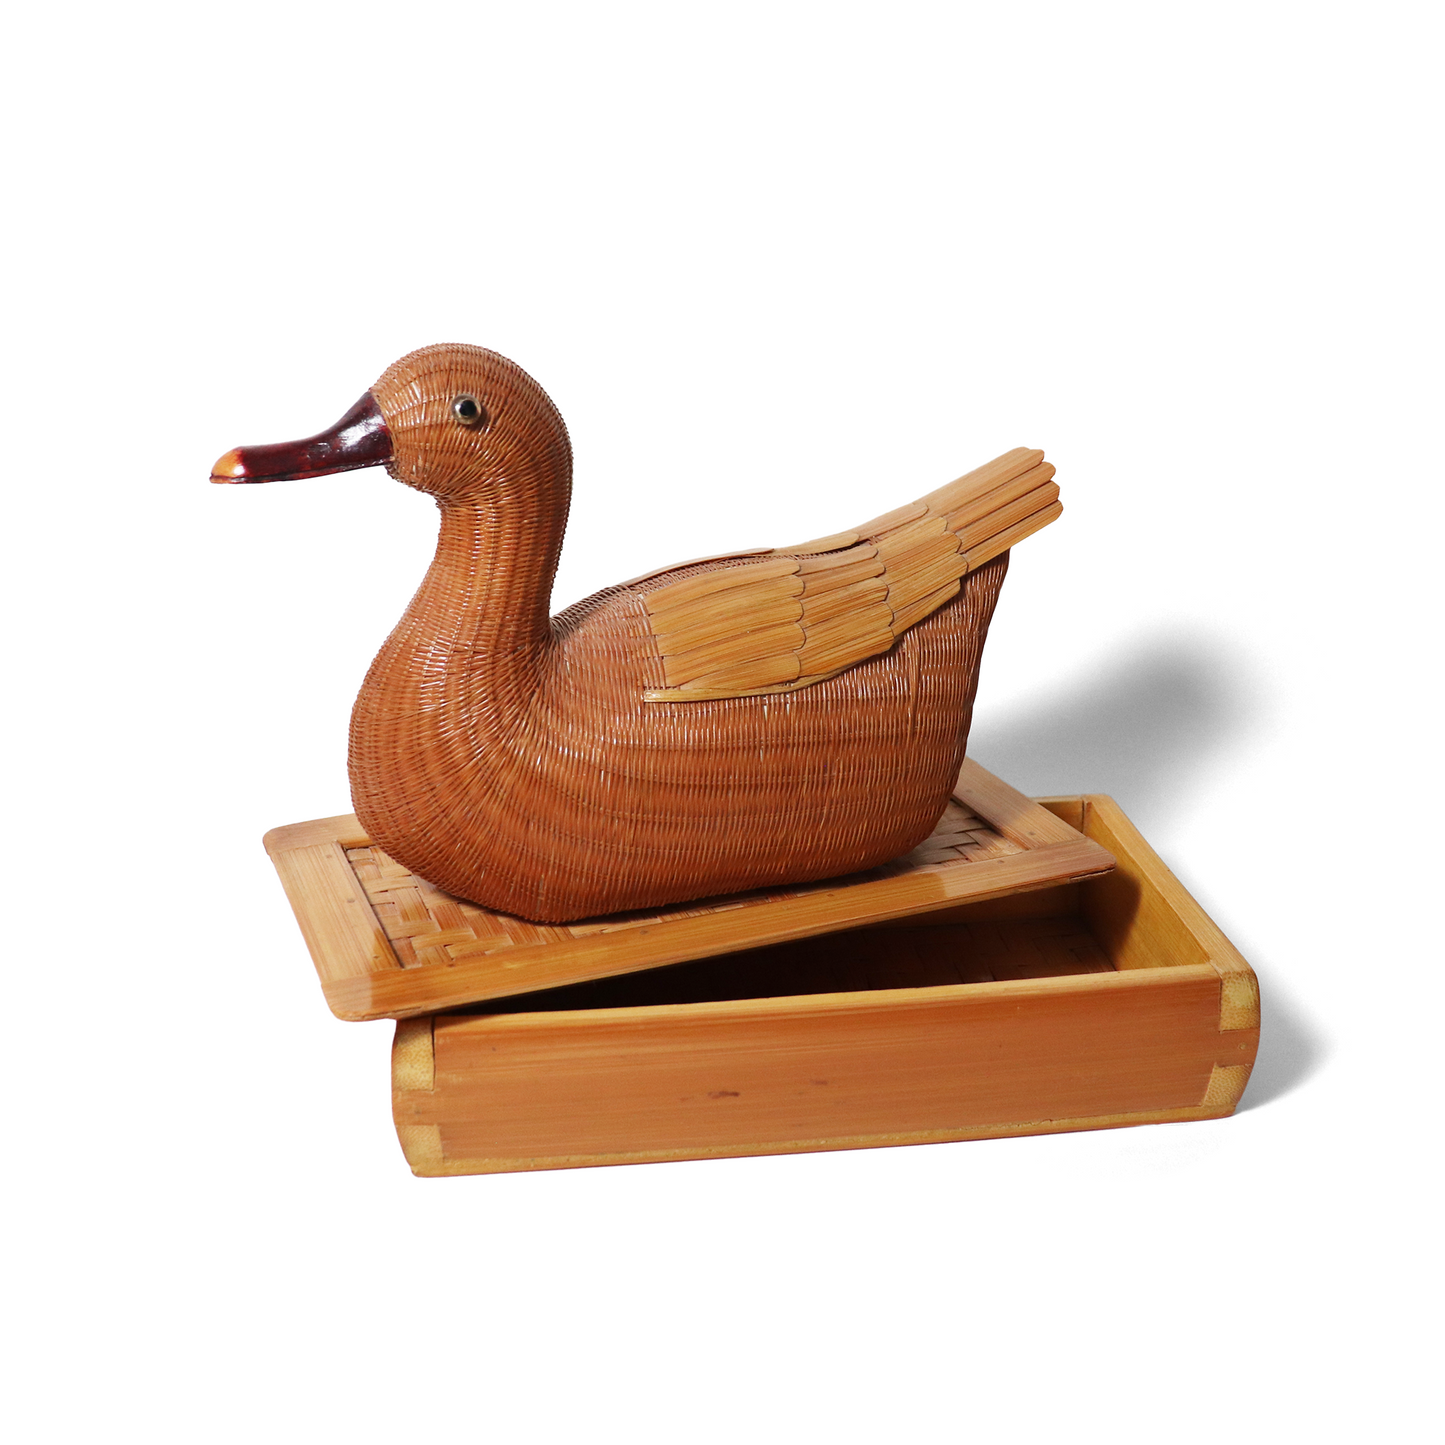 Chinese wicker duck box